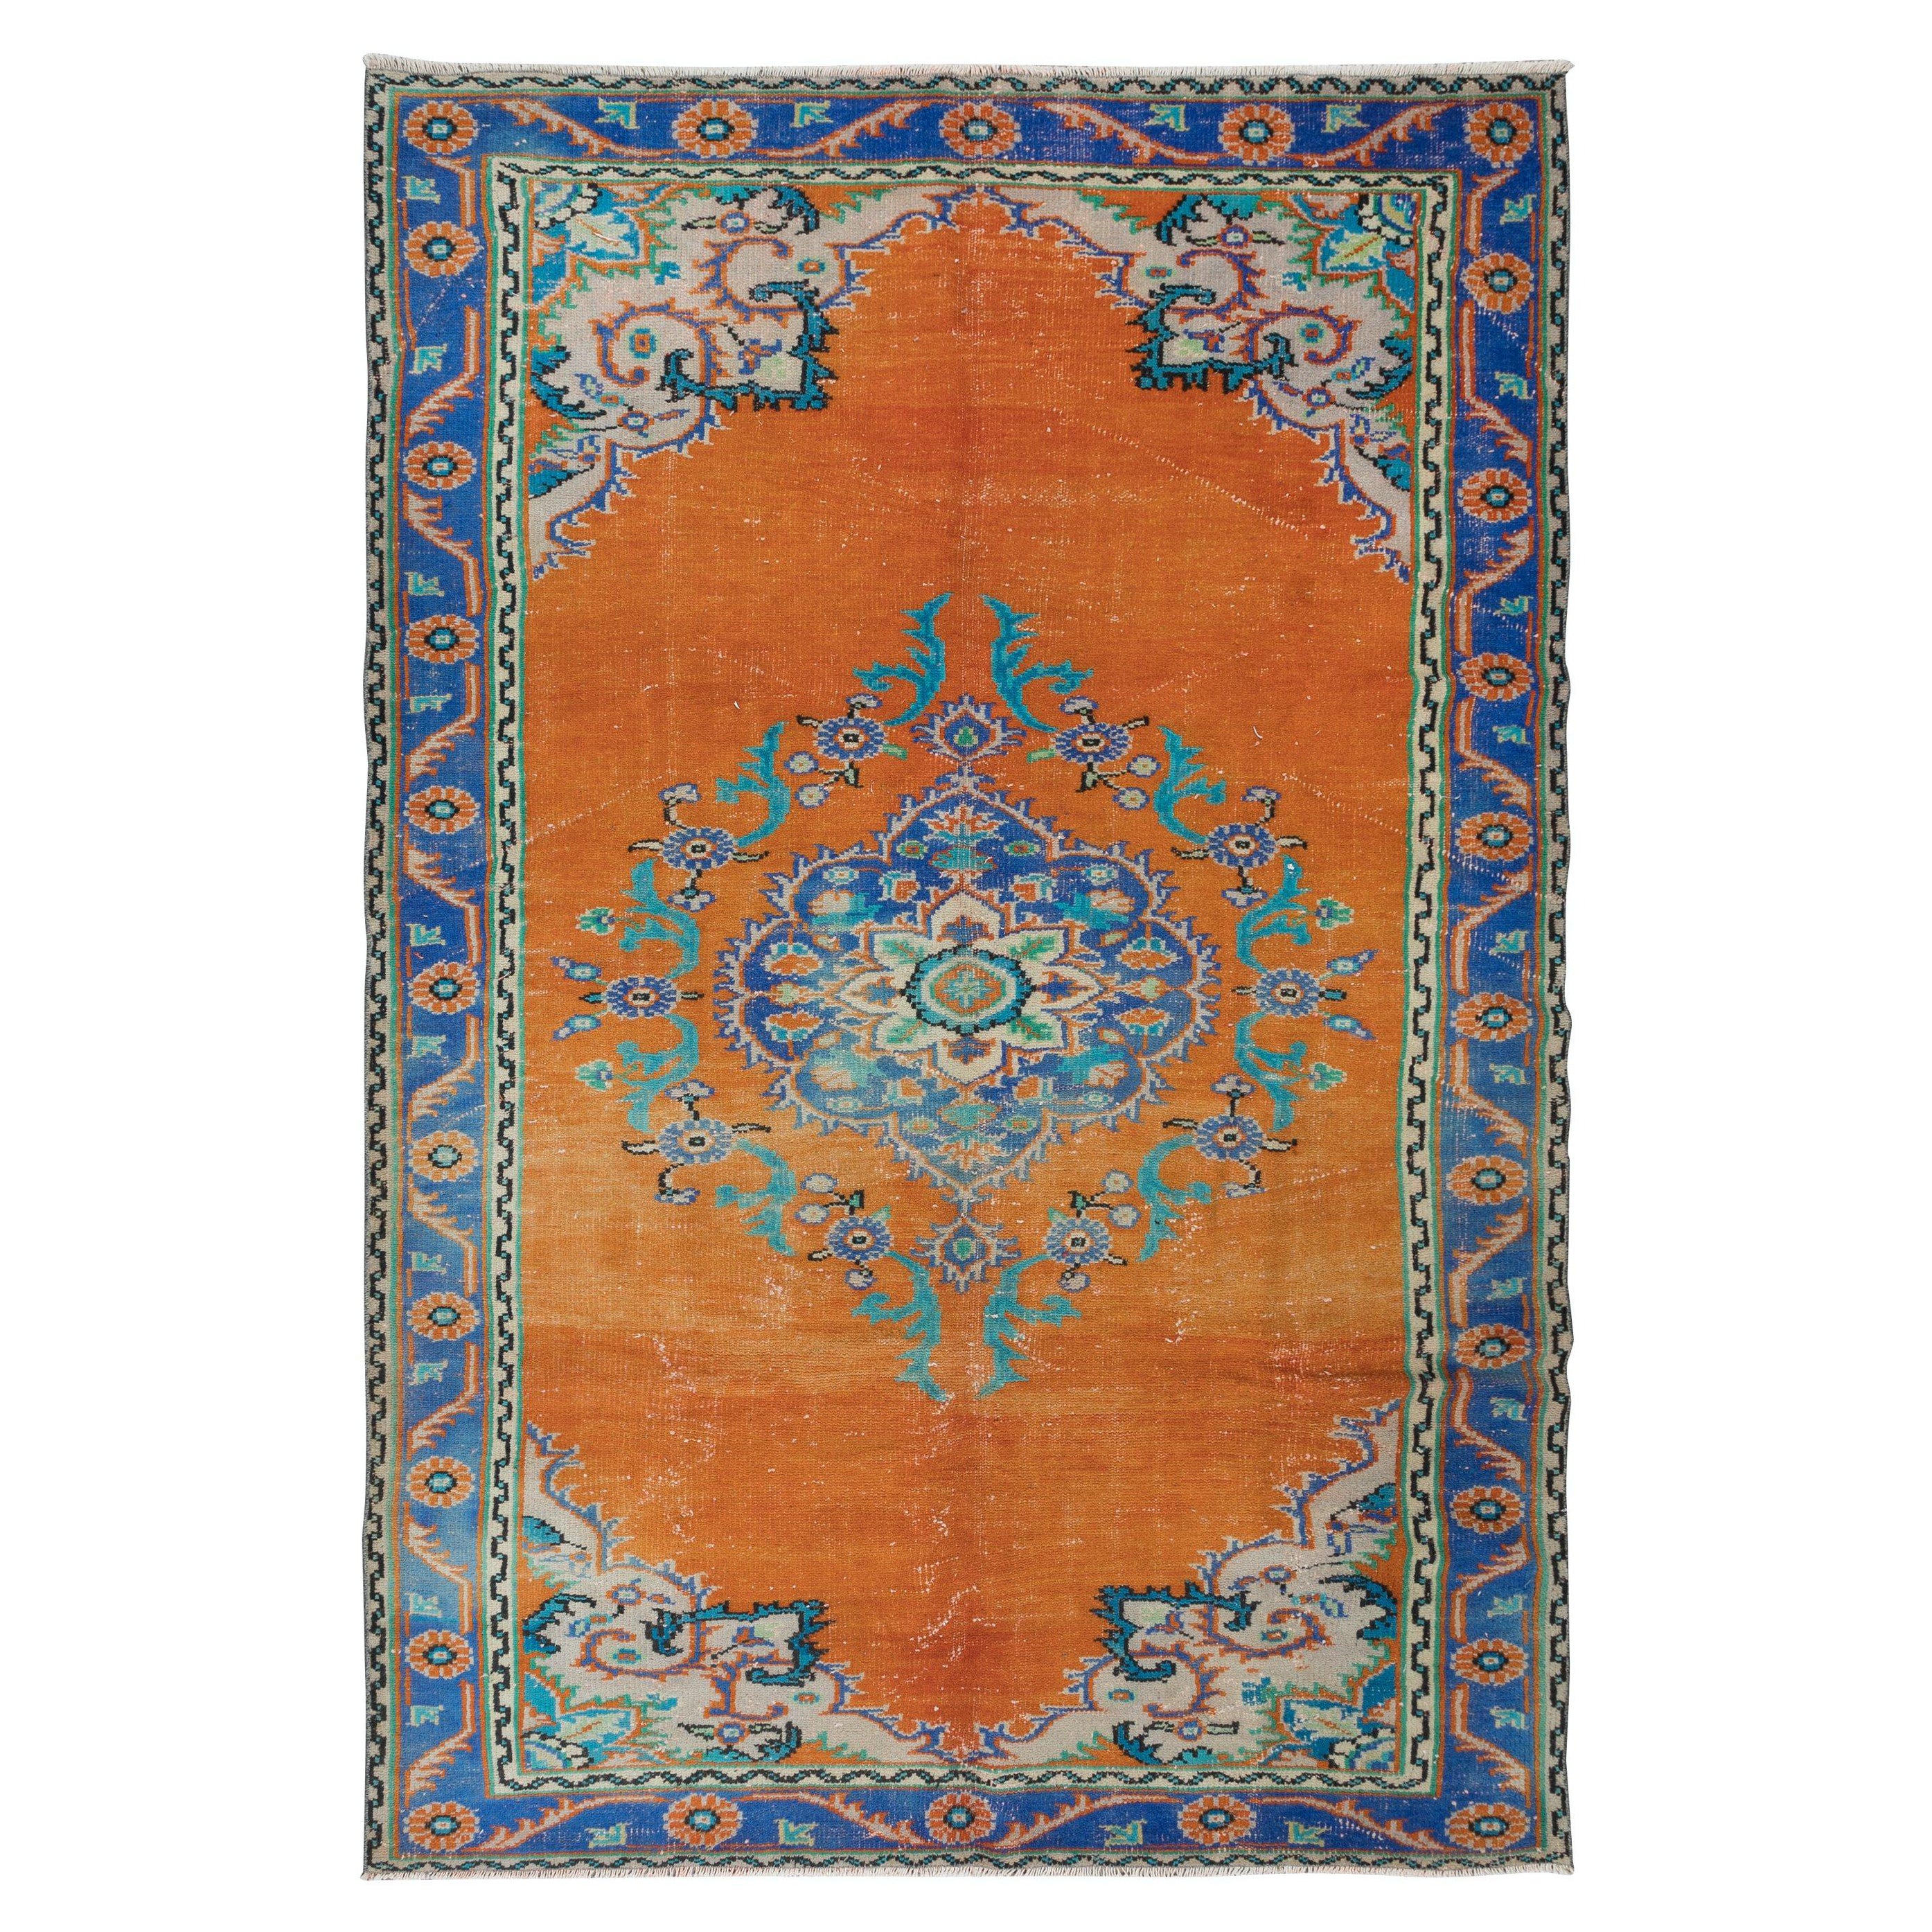 6.8x10 Ft Vintage Oriental Rug, Ca 1960, Handmade Turkish Tribal Carpet